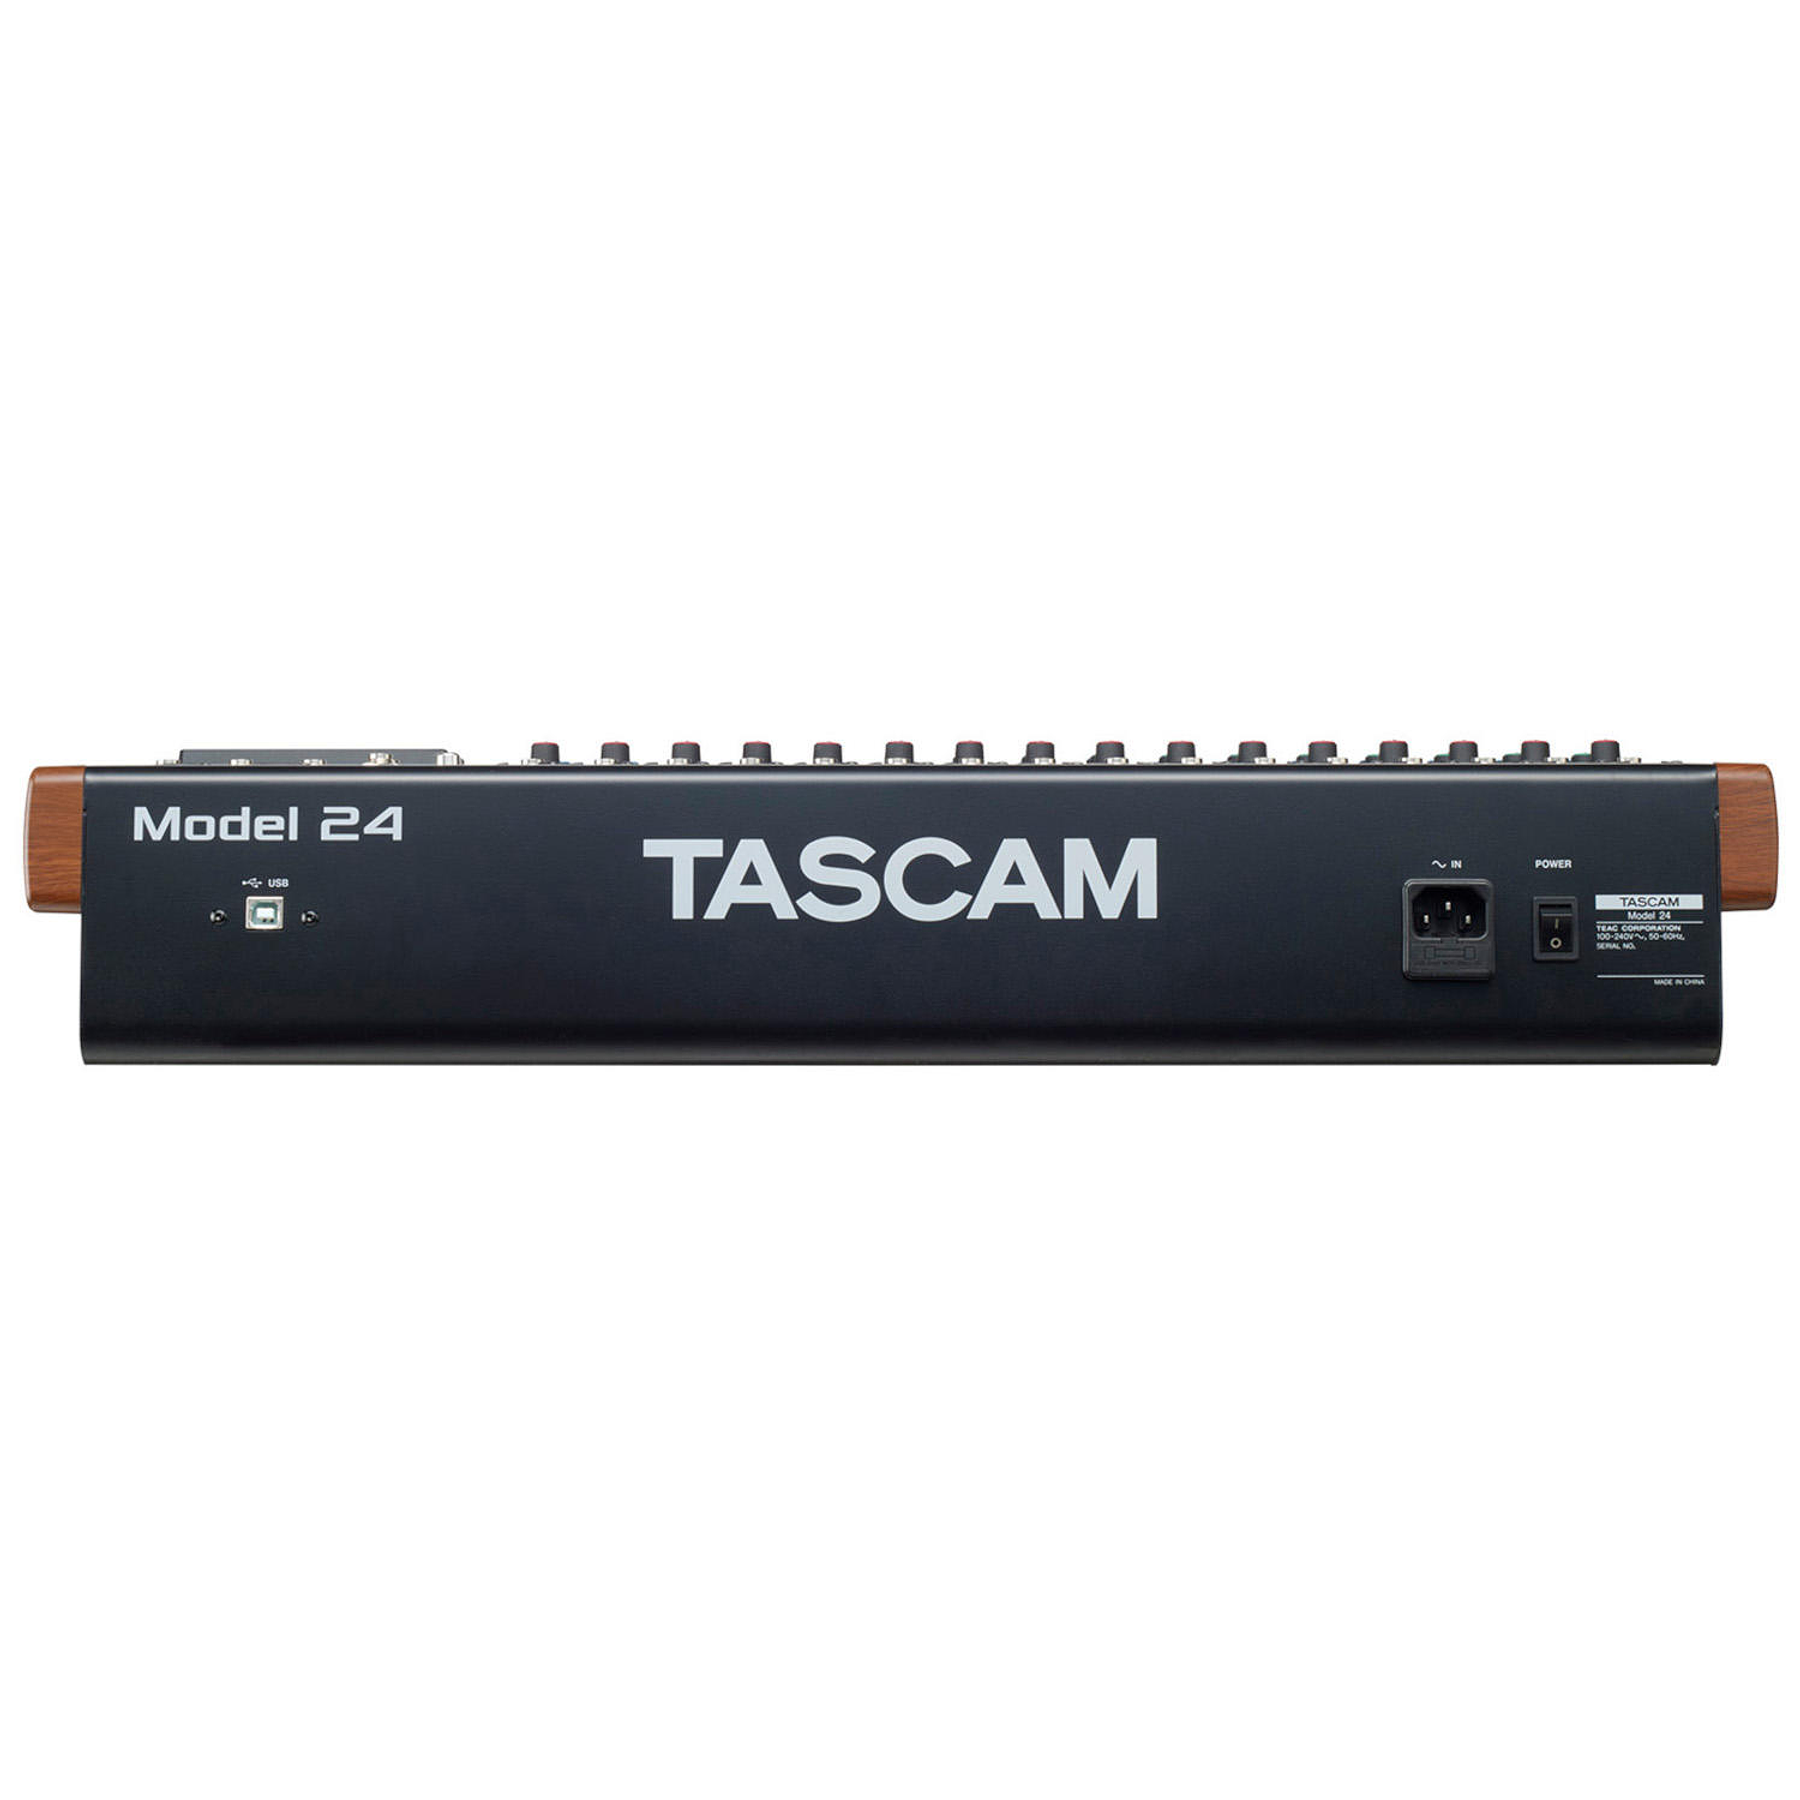 Mixer multipista con grabador e interfaz USB Tascam Model 24